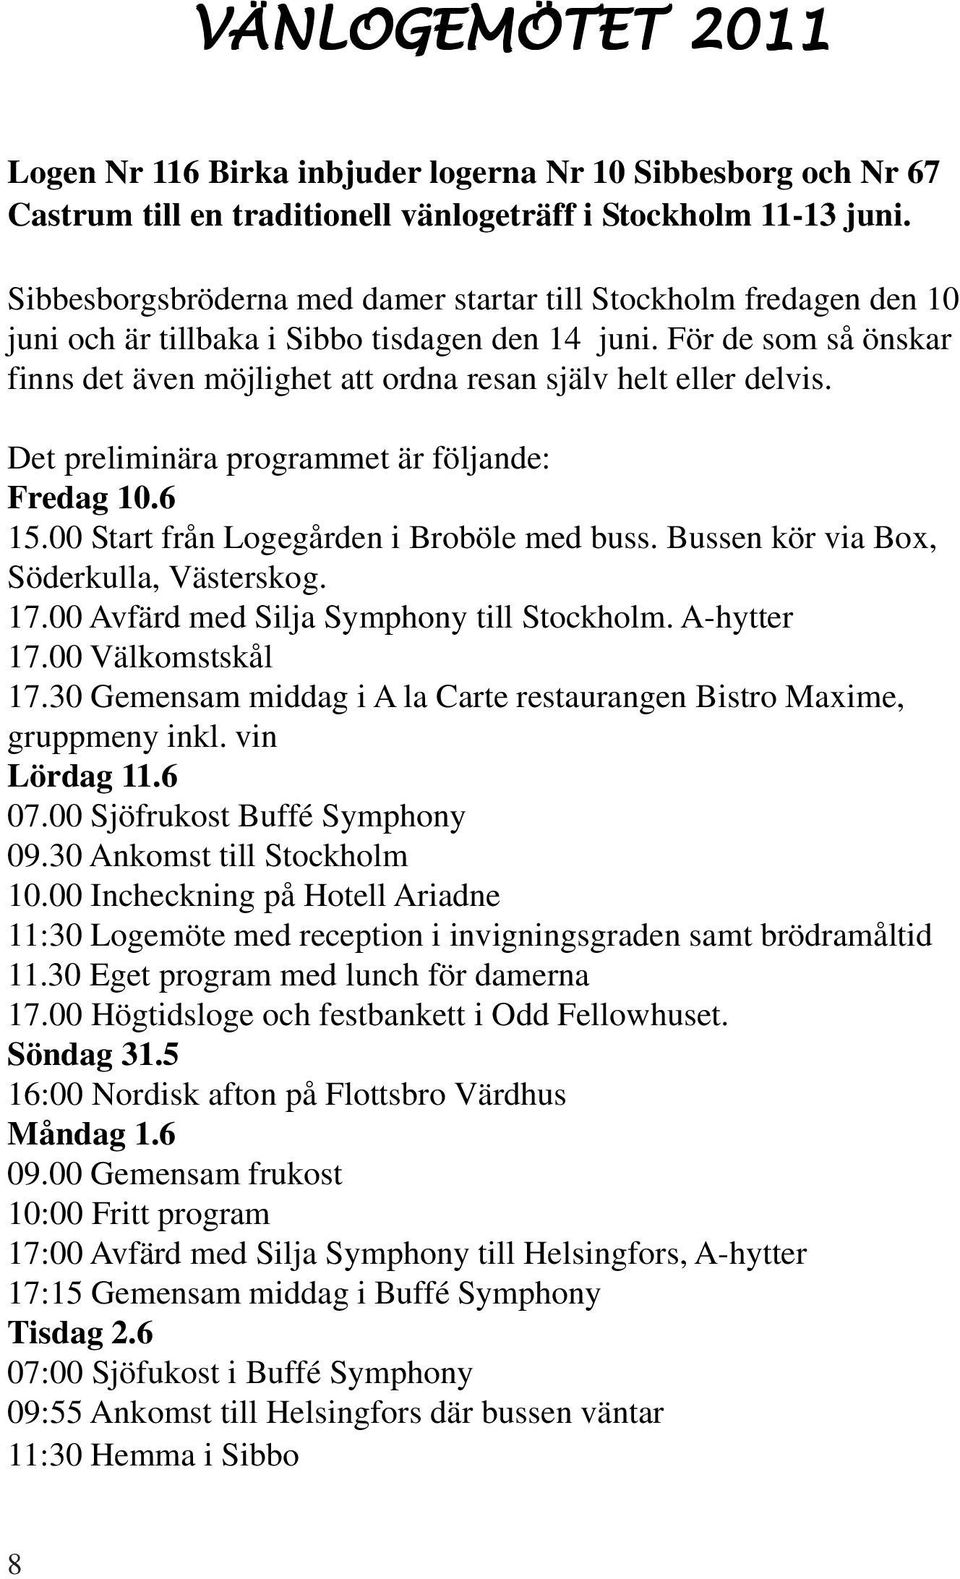 För de som så önskar finns det även möjlighet att ordna resan själv helt eller delvis. Det preliminära programmet är följande: Fredag 10.6 15.00 Start från Logegården i Broböle med buss.